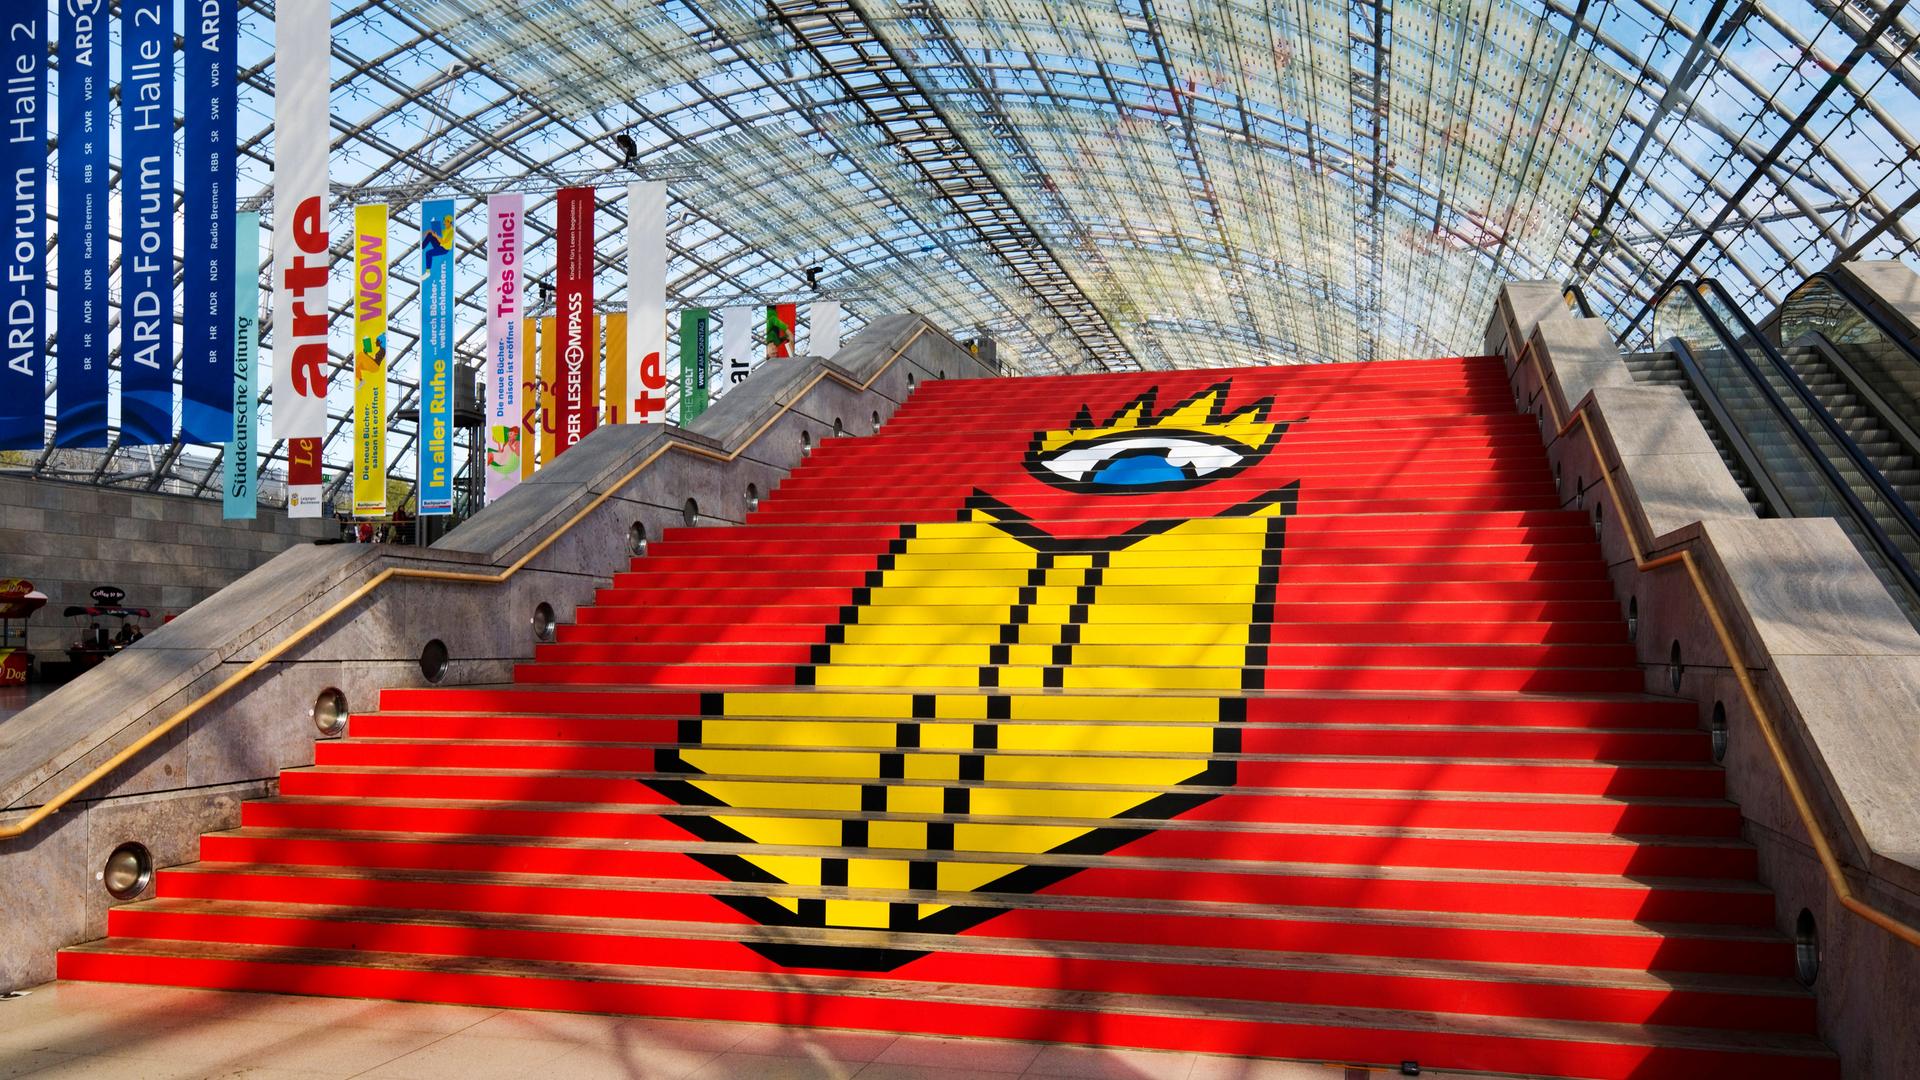 Das Logo der Leipziger Buchmesse auf einer Treppe in einer Glashalle der Messe in Leipzig. Auf rotem Grund ist ein stilisierter Kopf zu sehen, der aus nur einem Auge besteht. Davor, ebenfalls in Gelb, die Umrisse eines Buches. 